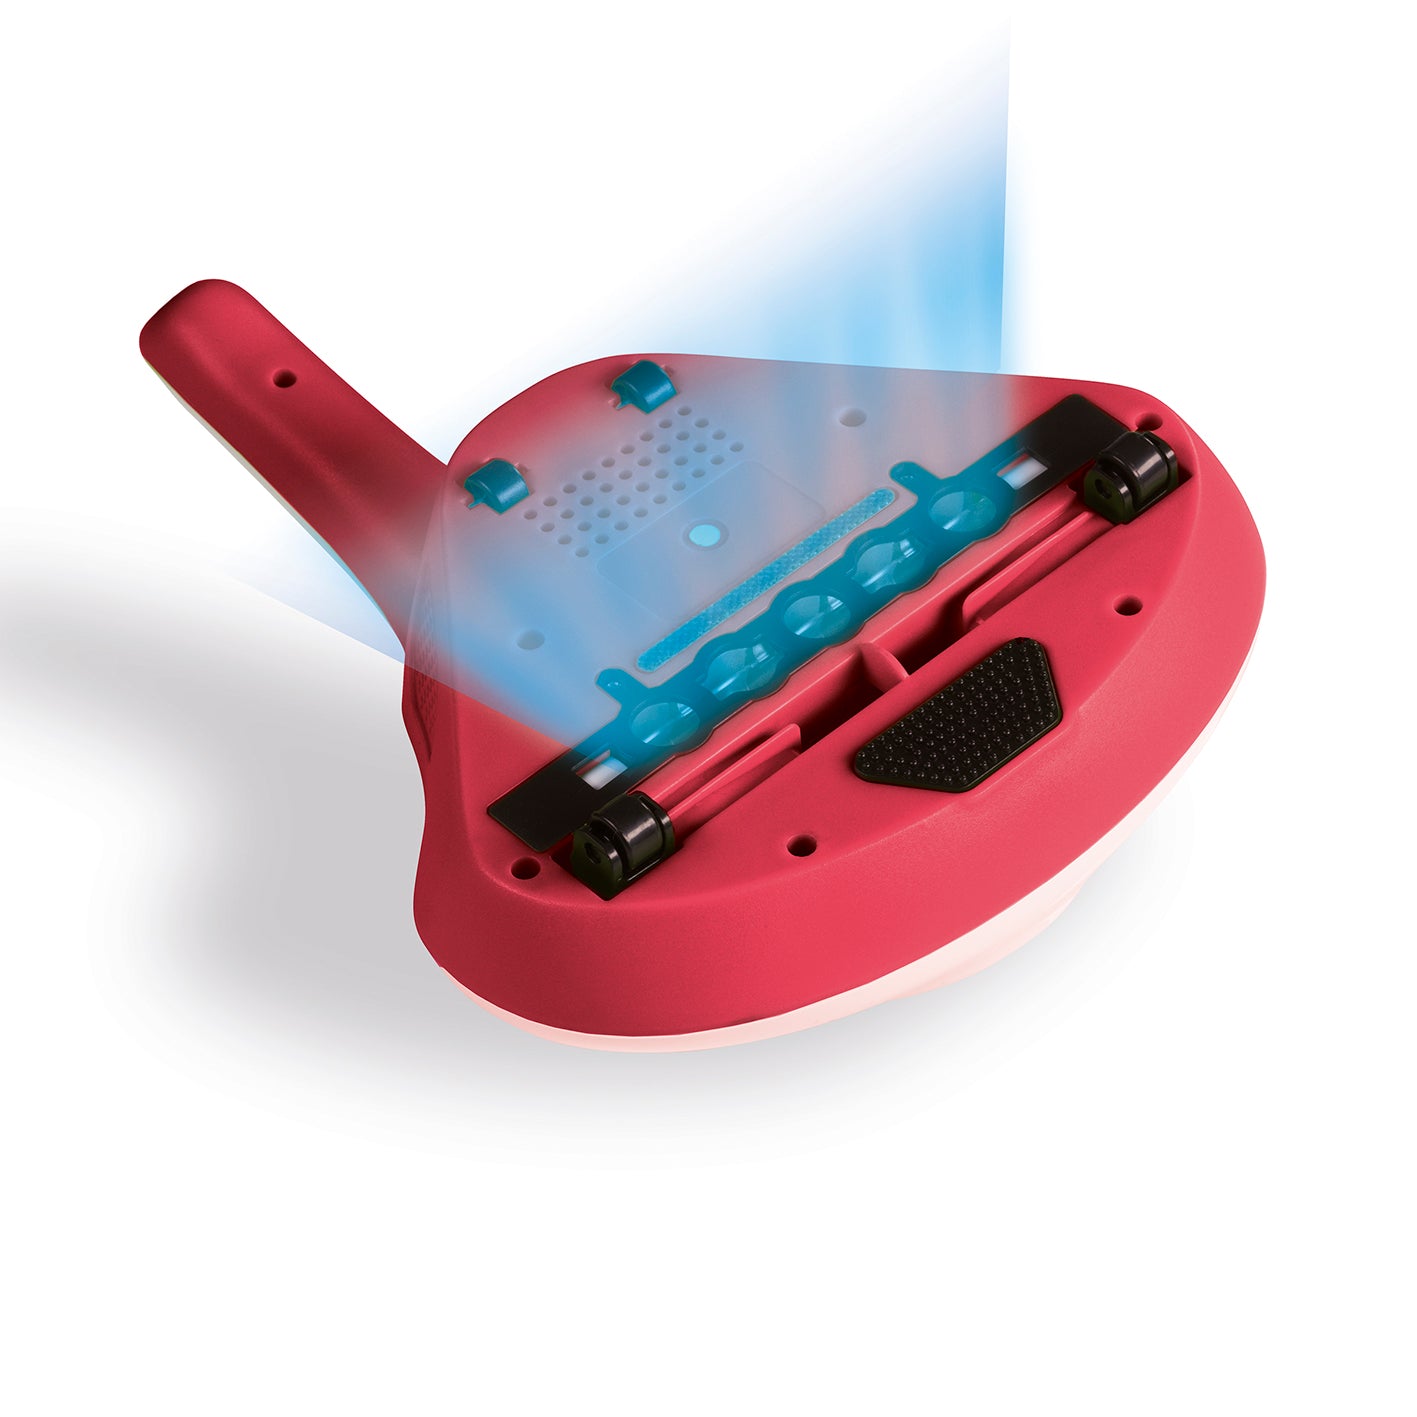 Akku-Milben-Handstaubsauger mit UV-C Licht - weiß/rot